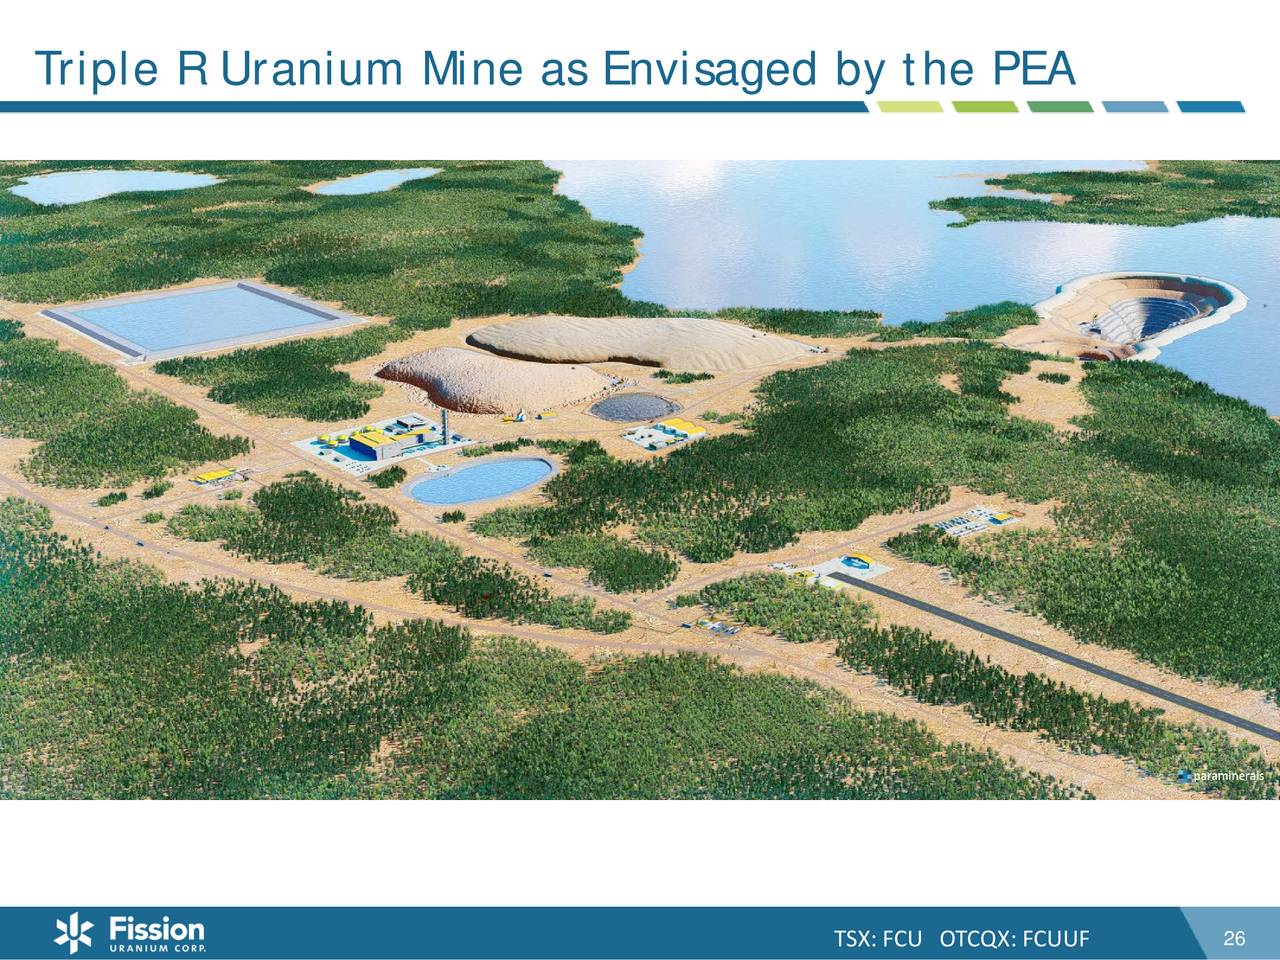 fission uranium mines